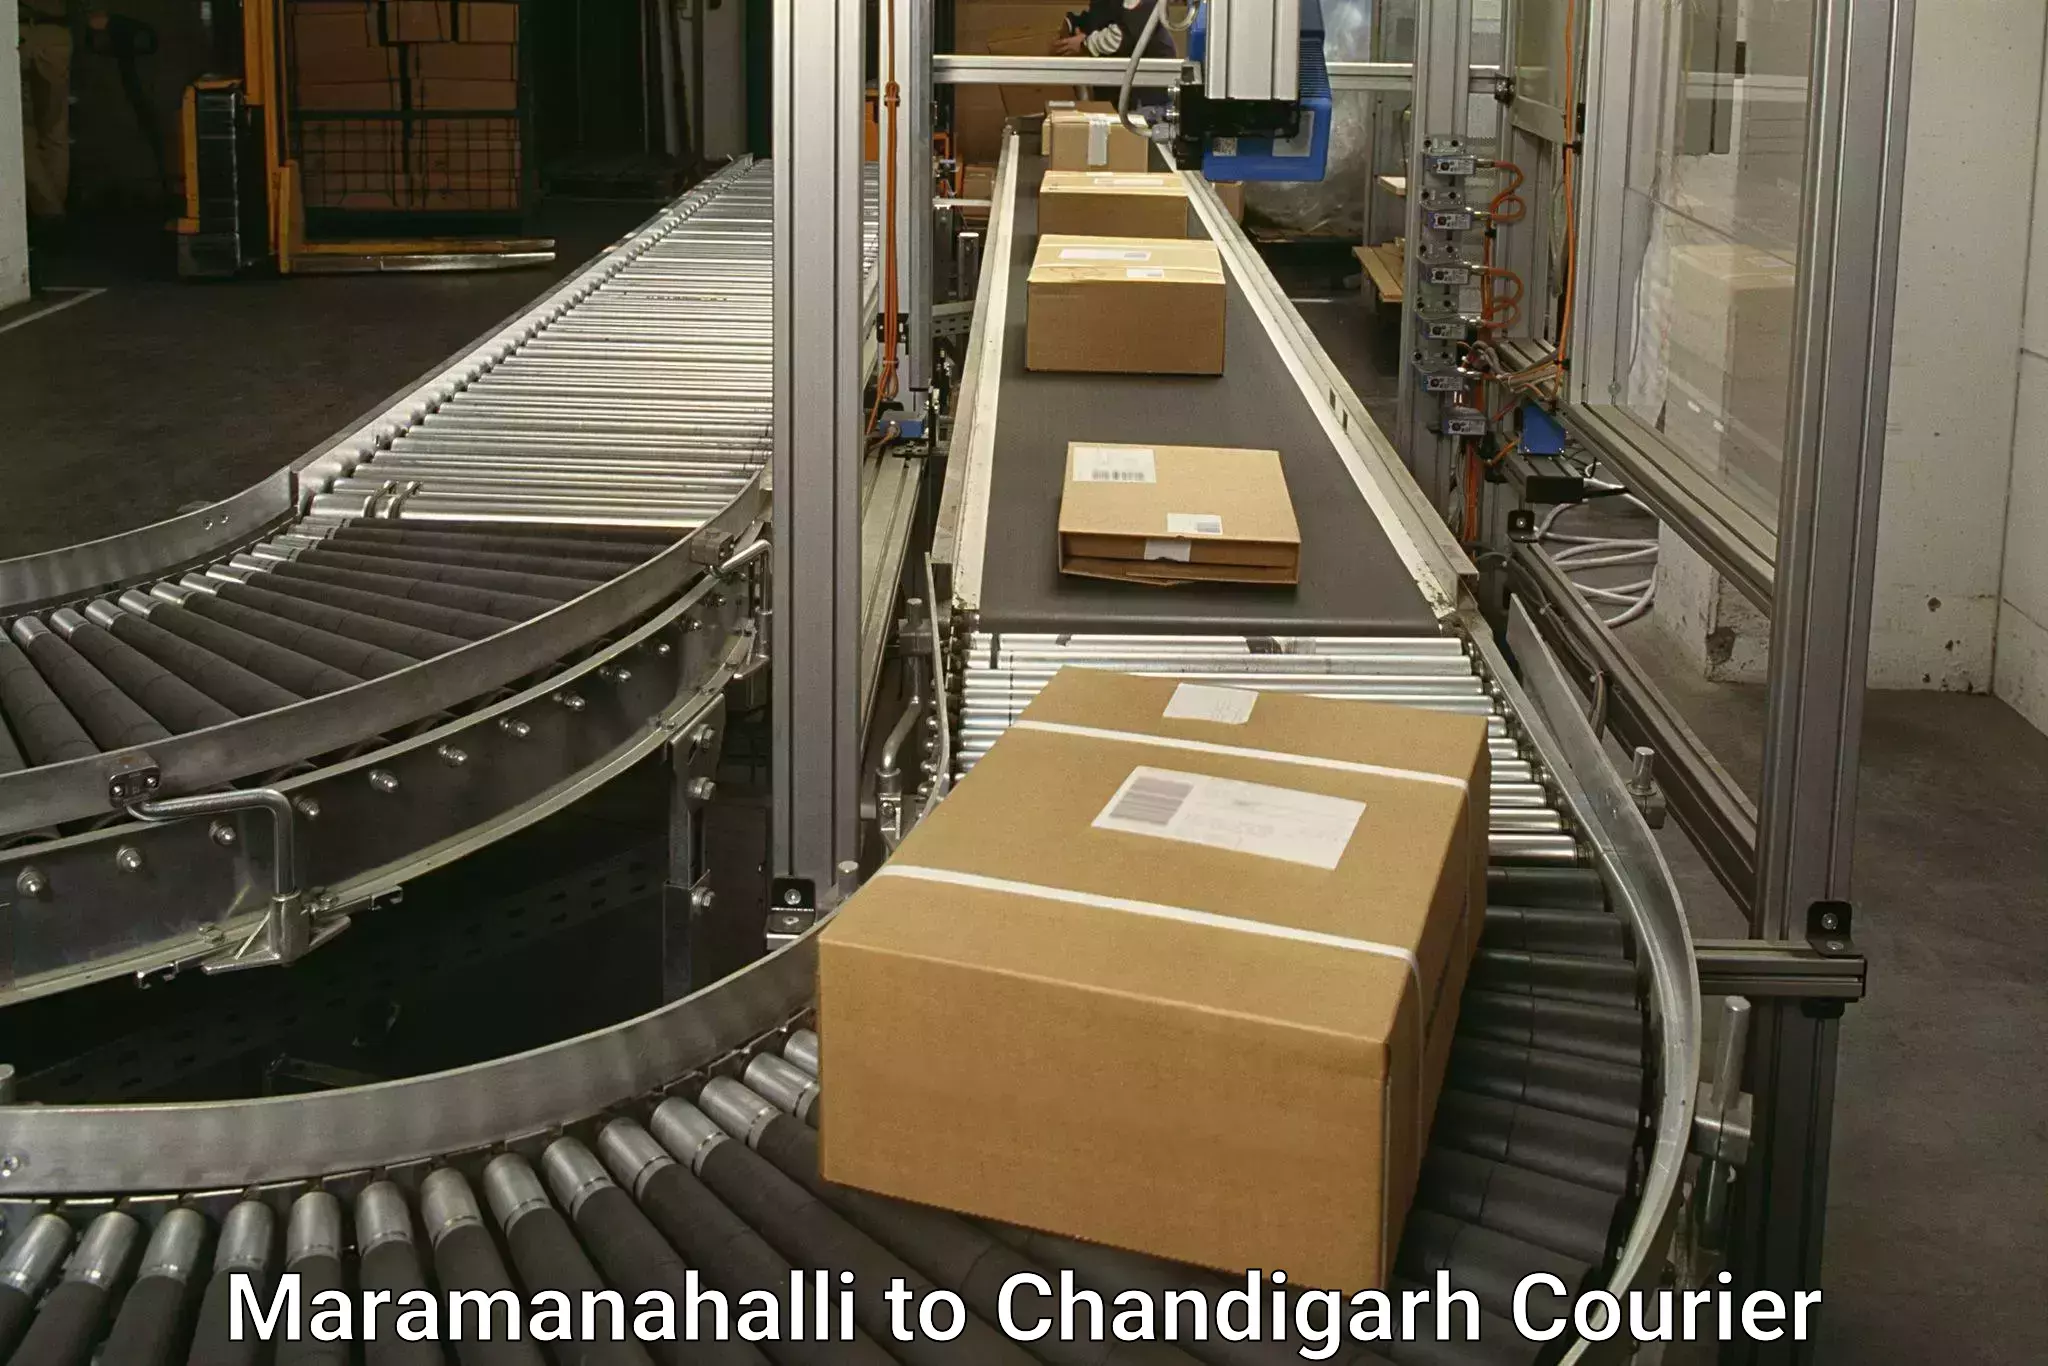 Custom courier packaging Maramanahalli to Chandigarh